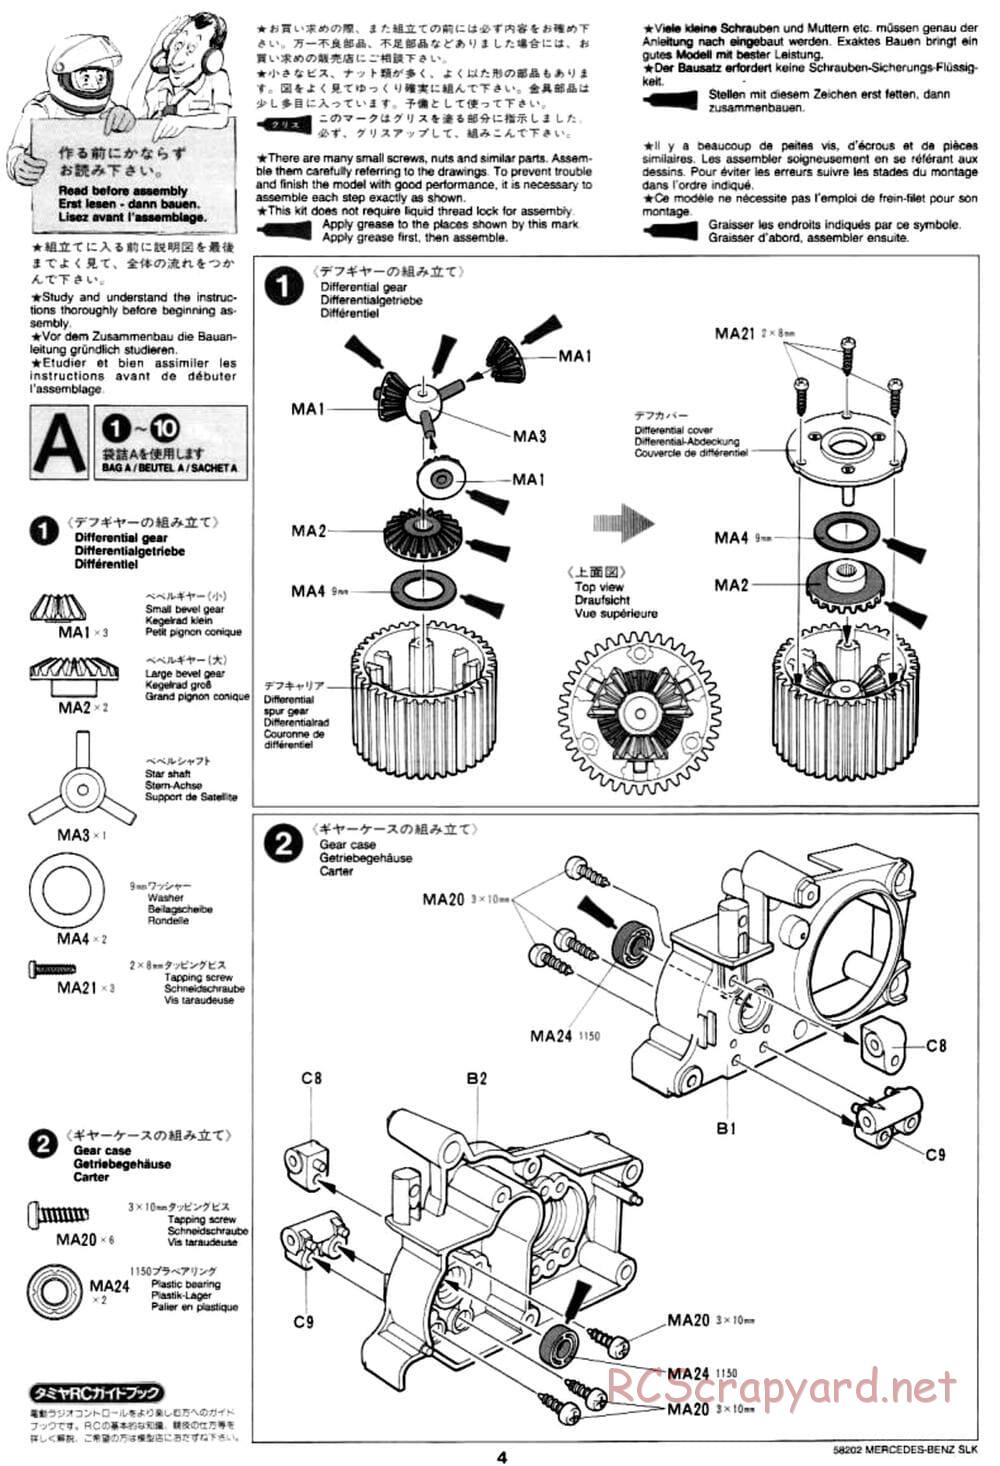 Tamiya - Mercedes-Benz SLK - M02L Chassis - Manual - Page 4